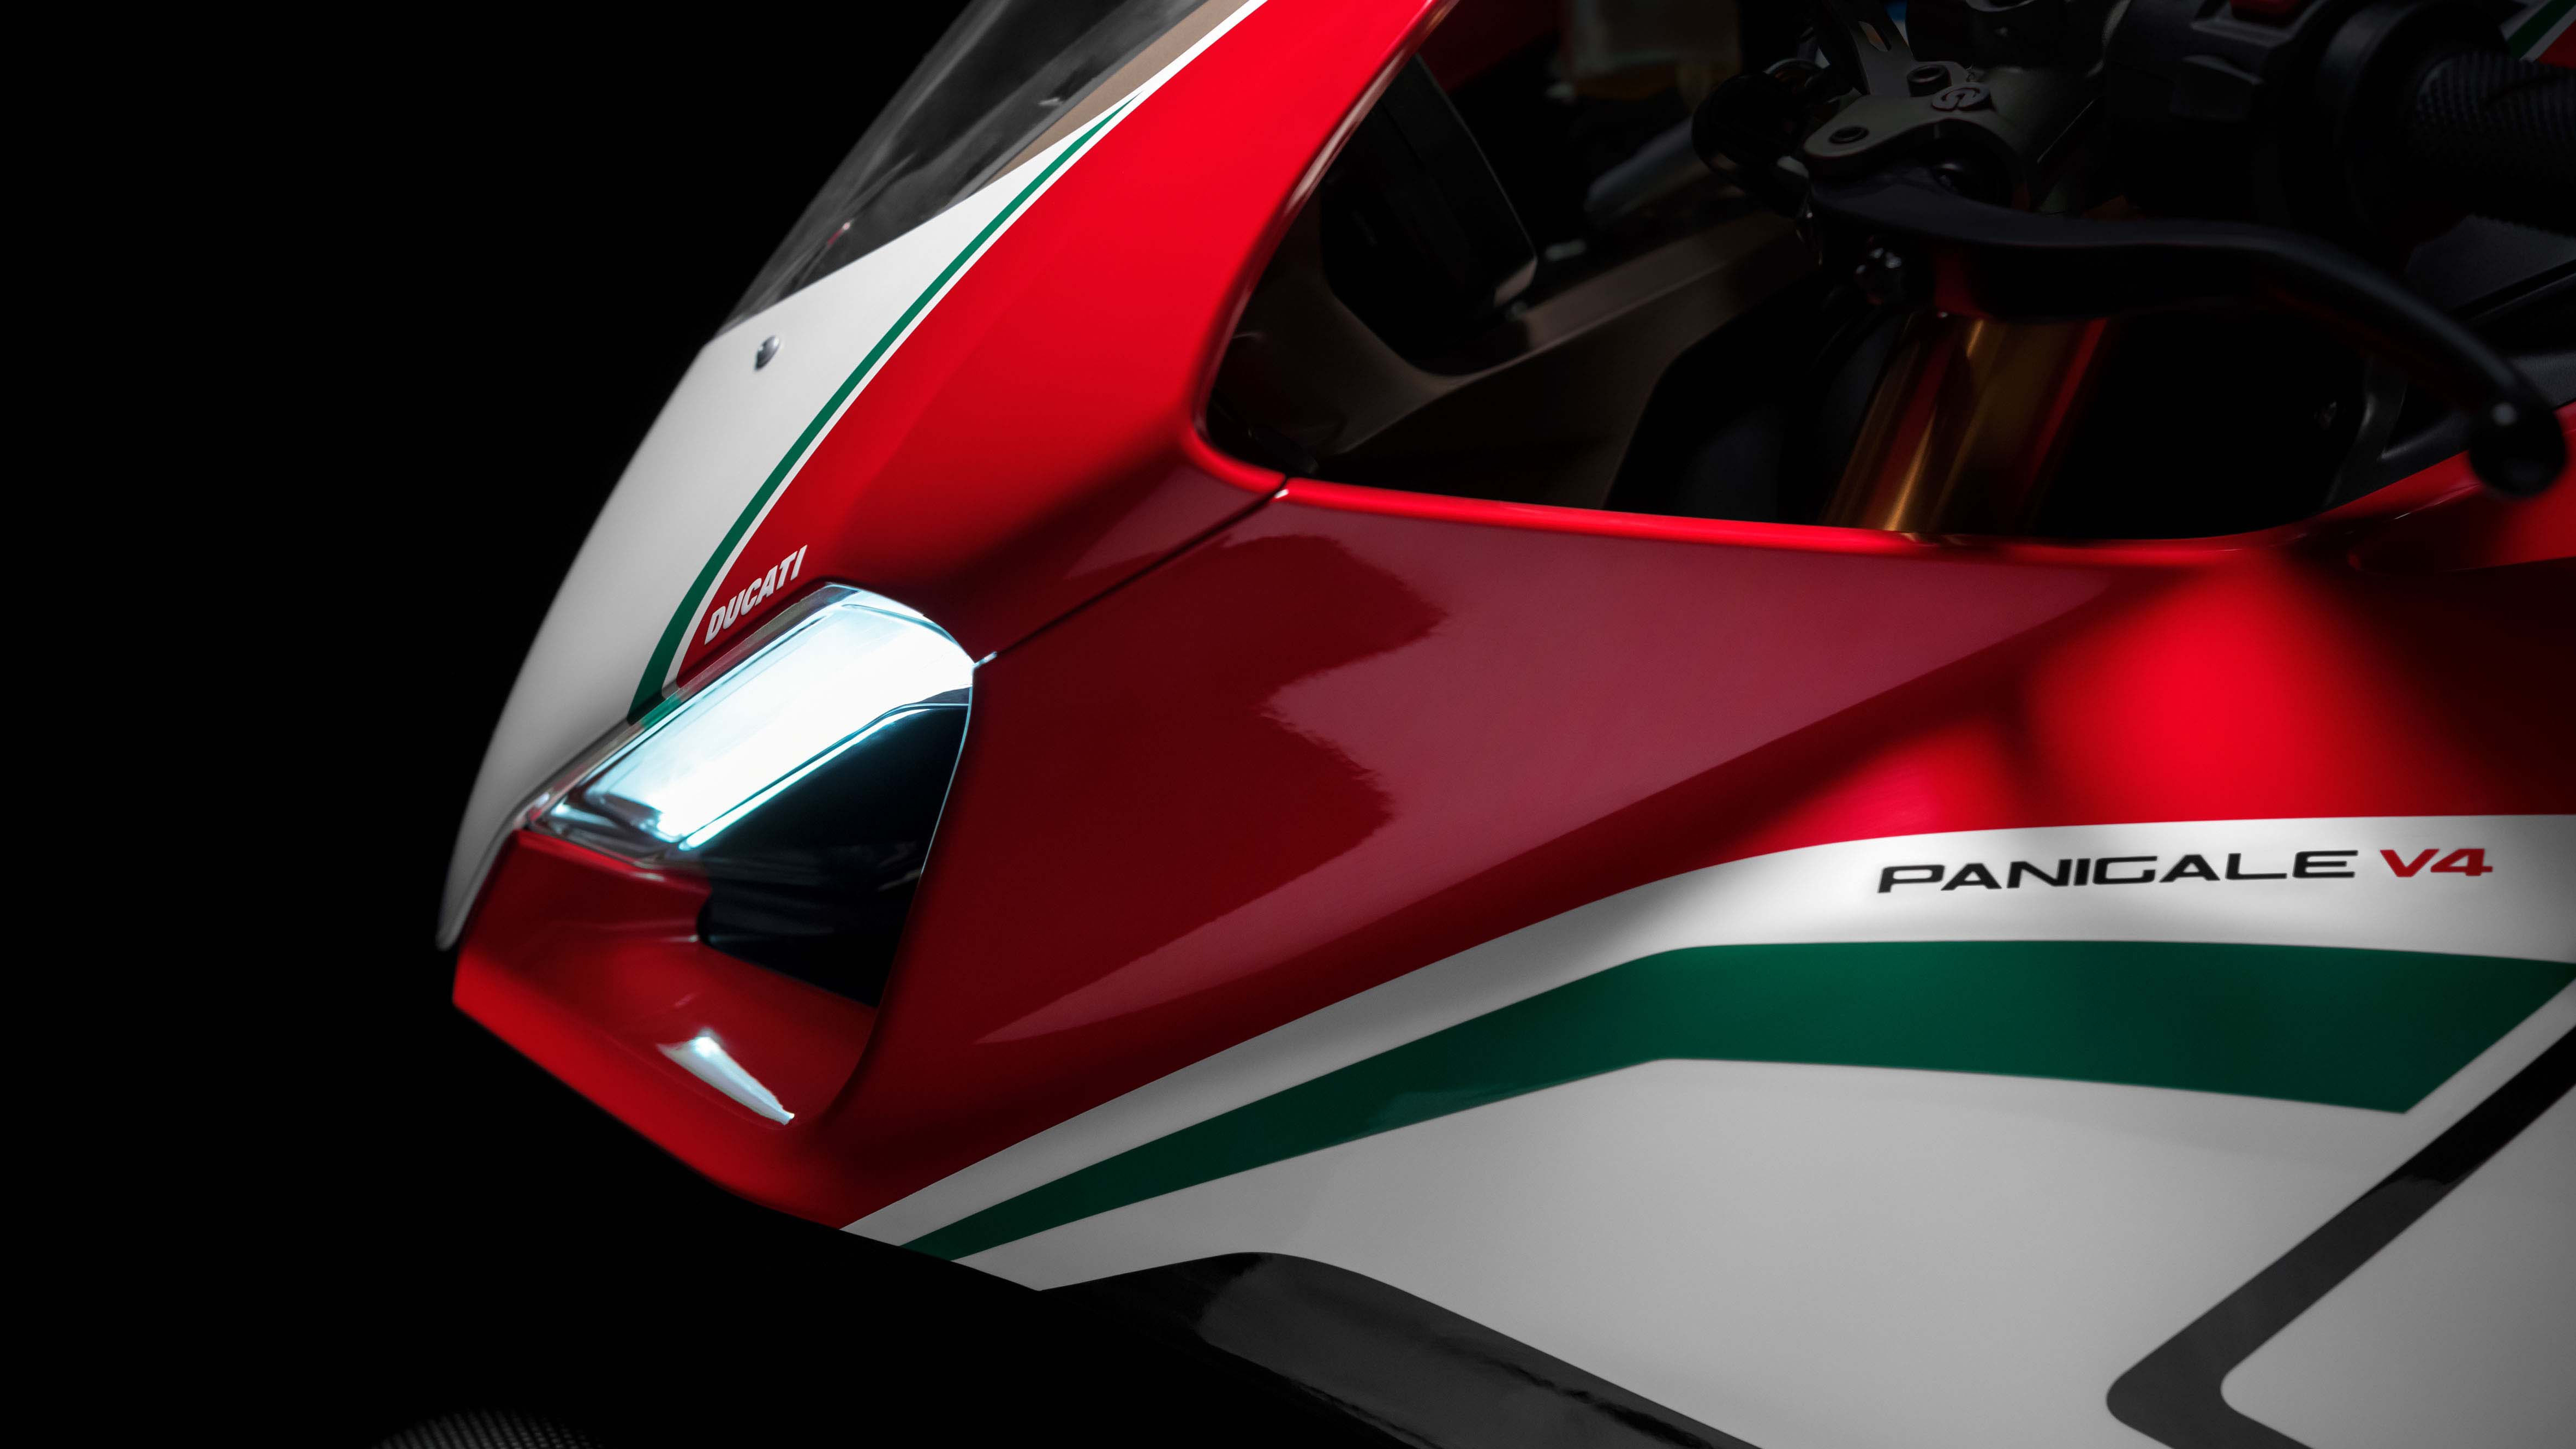 Ducati Panigale V4 Speciale 4K 2018